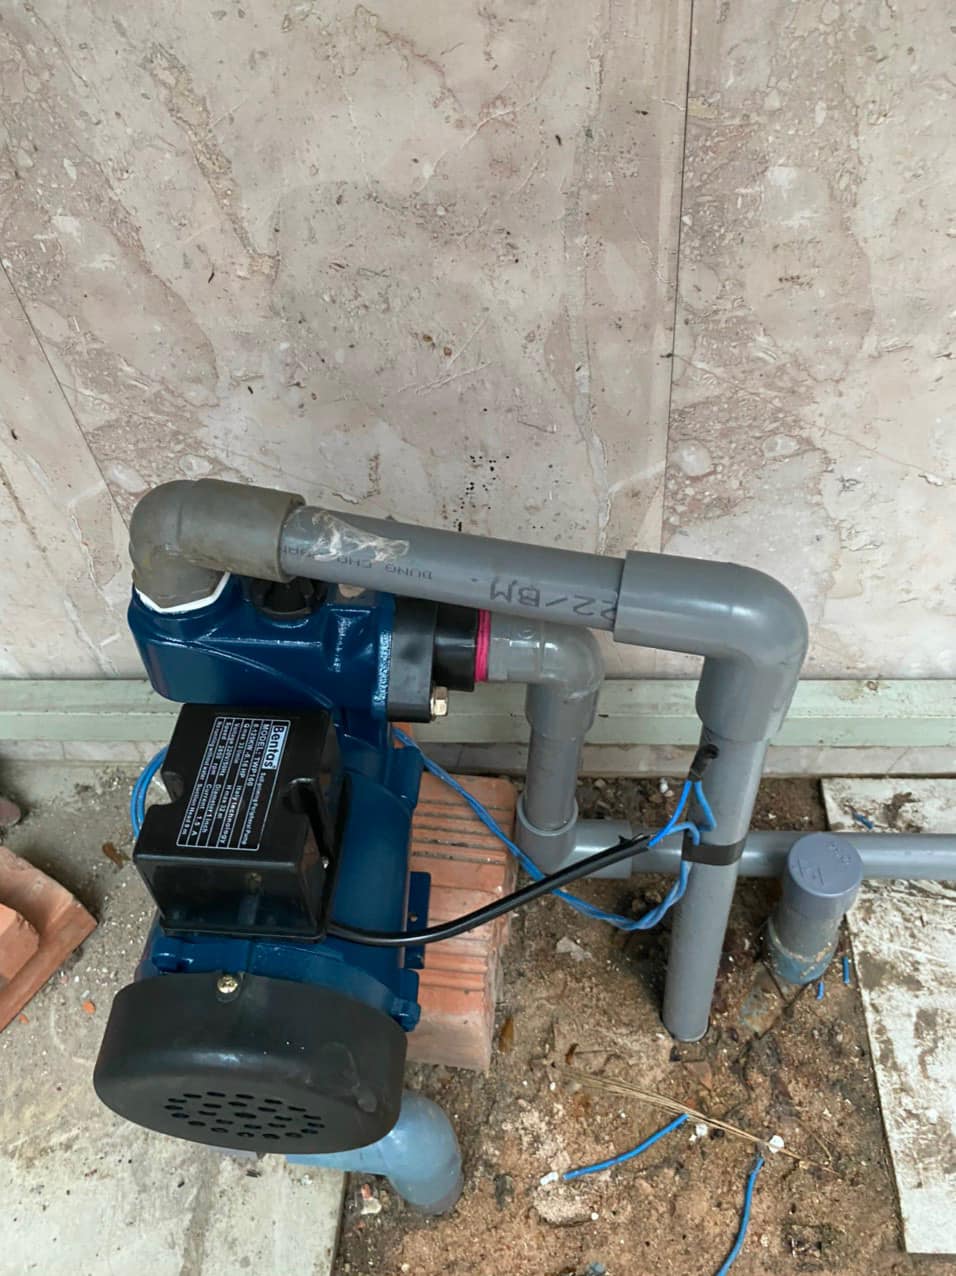 Chuyên lắp máy bơm nước panasonic ở khu vực quận 8